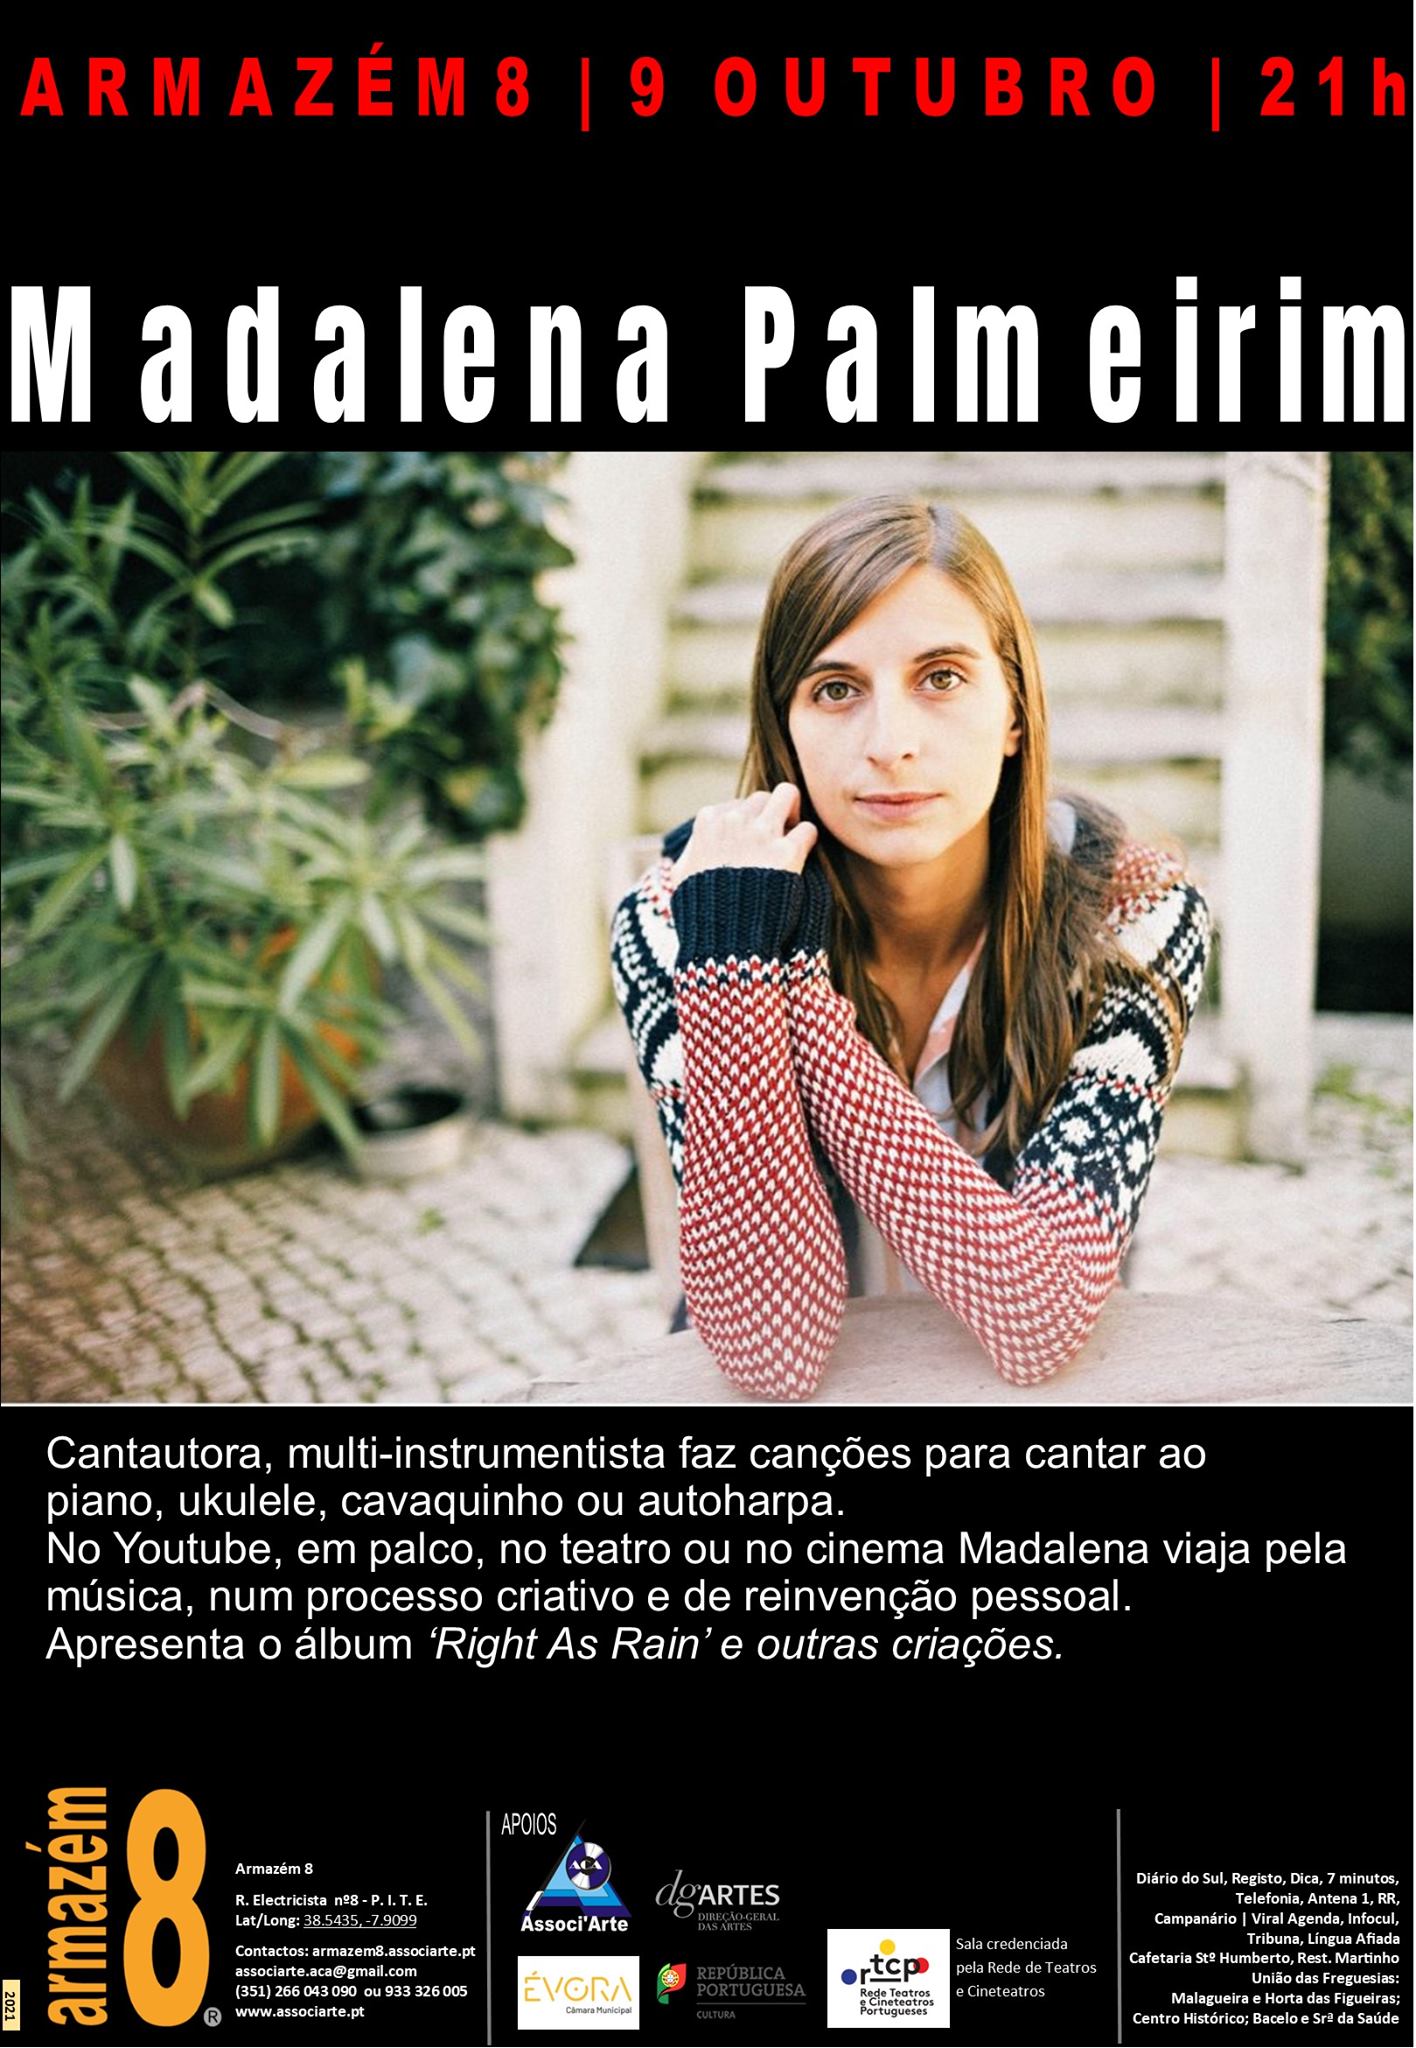 Madalena Palmeirim